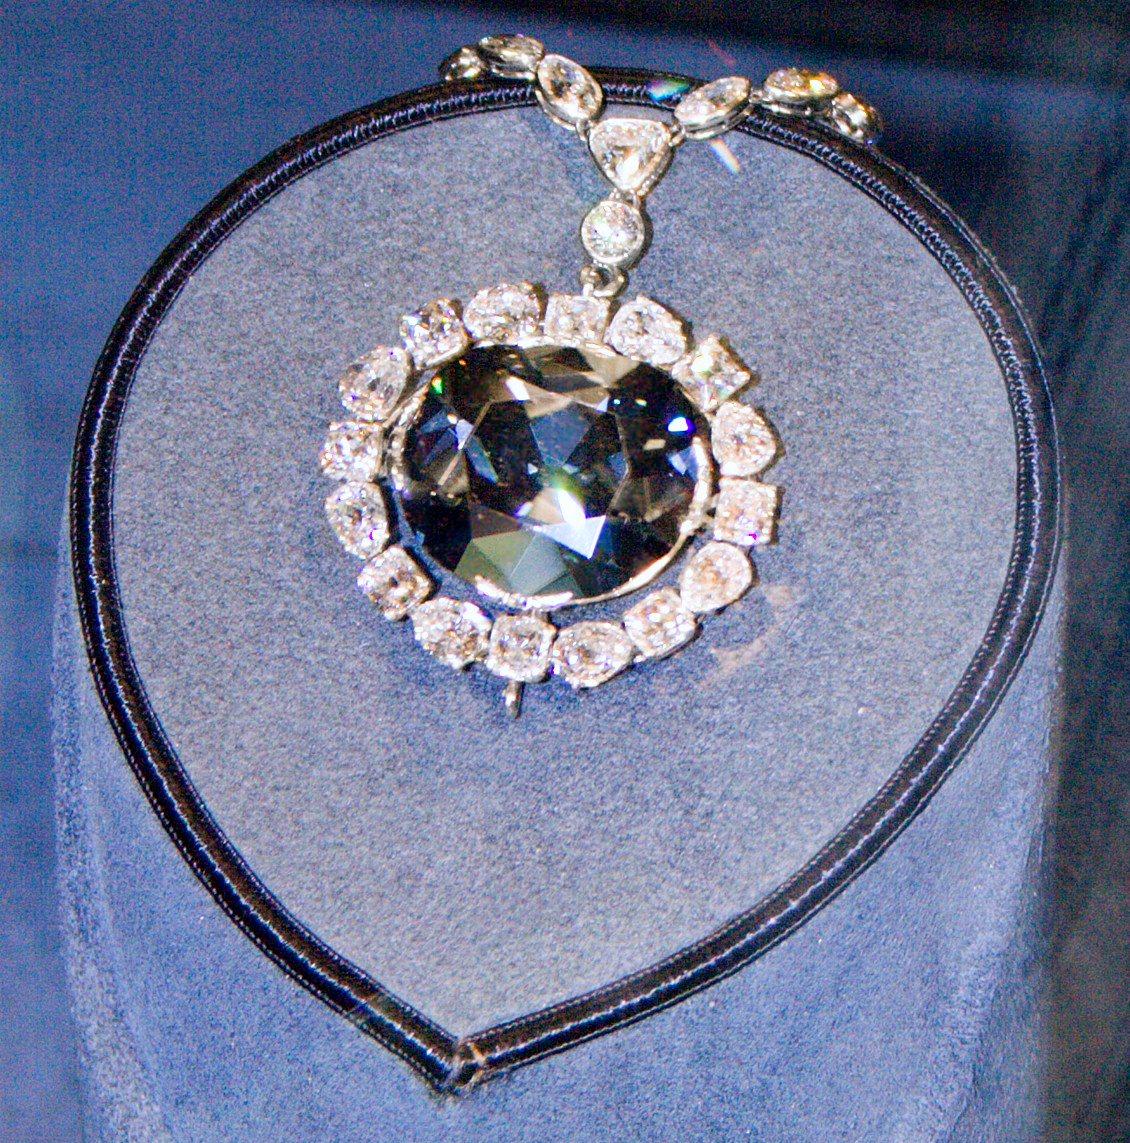 Hope Diamond - Wikipedia